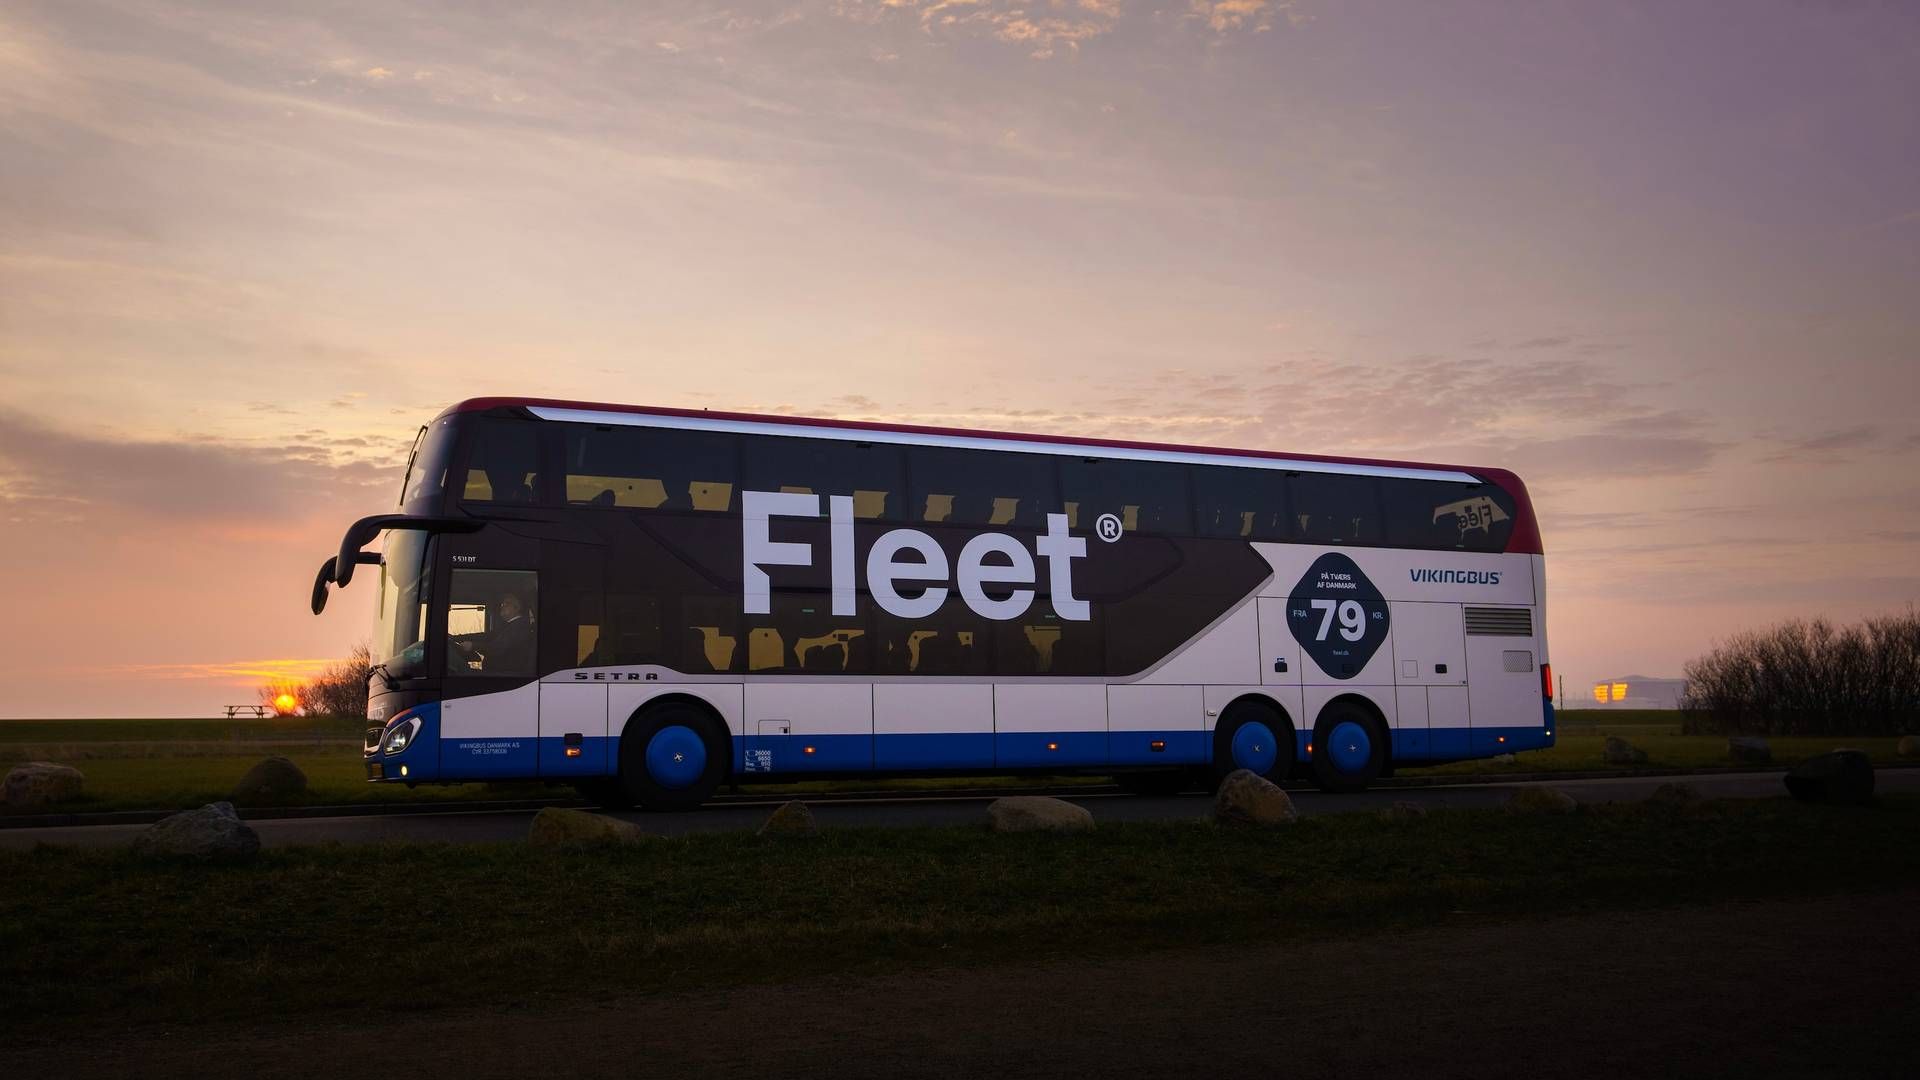 Kundepotentialet har ikke været stort nok til at holde fjernbuskonceptet Fleet i live. | Foto: Pr / Vikingbus